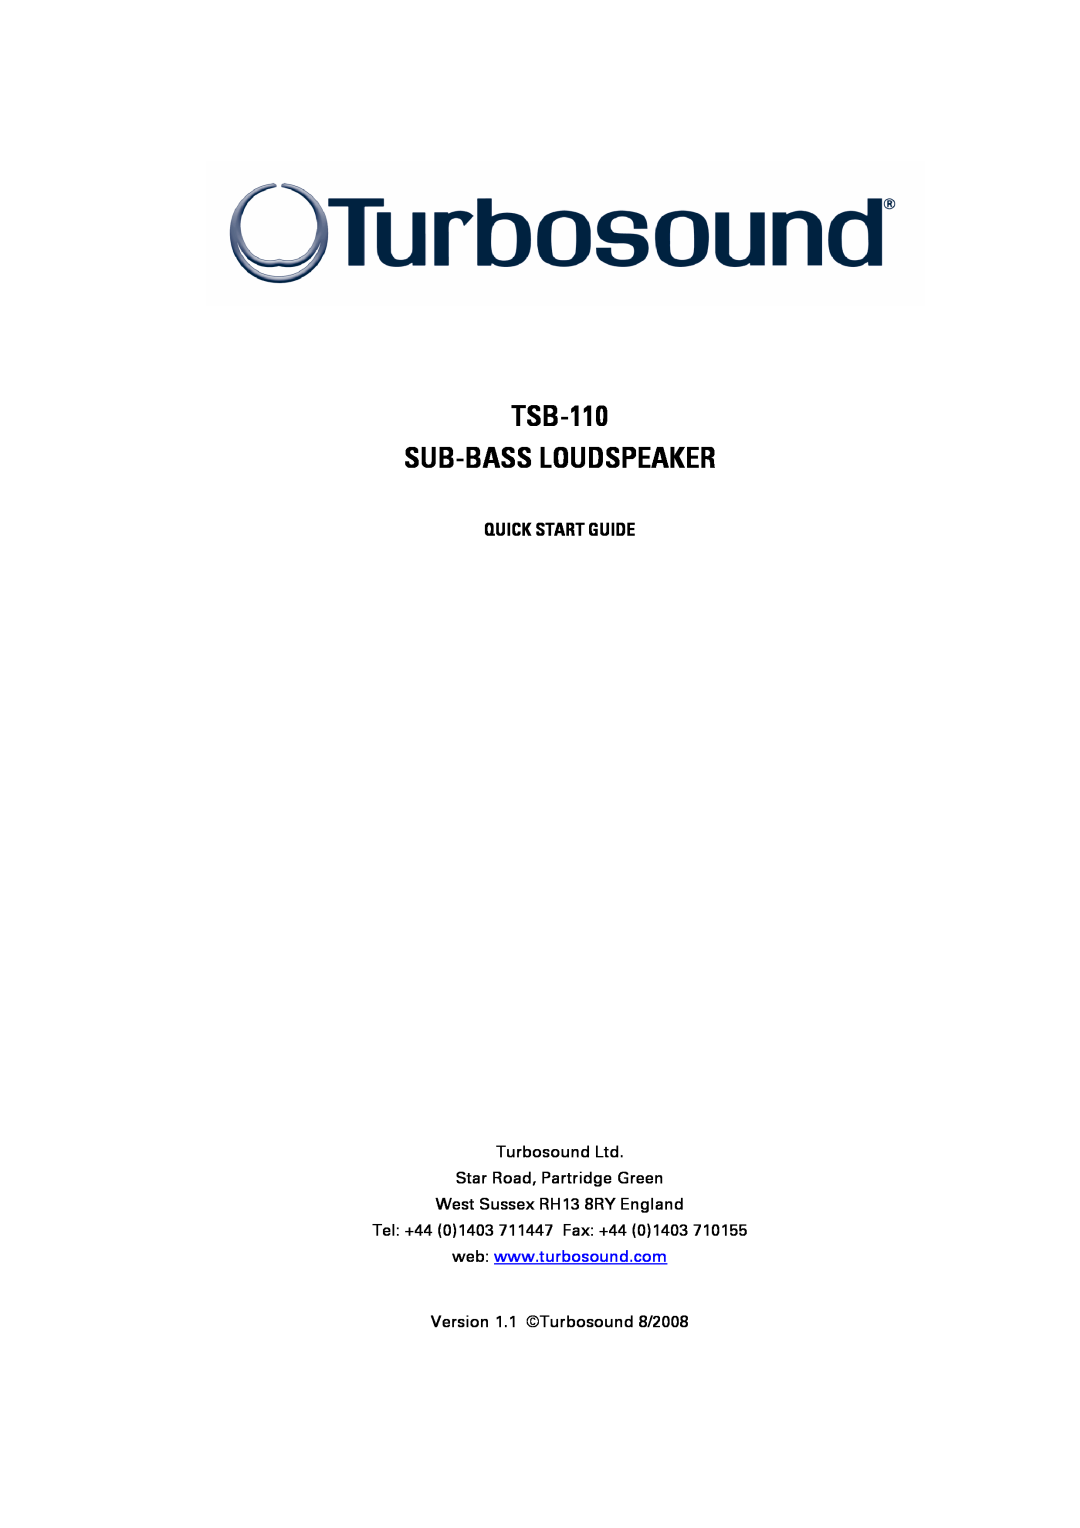 Turbosound quick start Quick Start Guide, TSB-110 SUB-BASSLOUDSPEAKER, West Sussex RH13 8RY England 